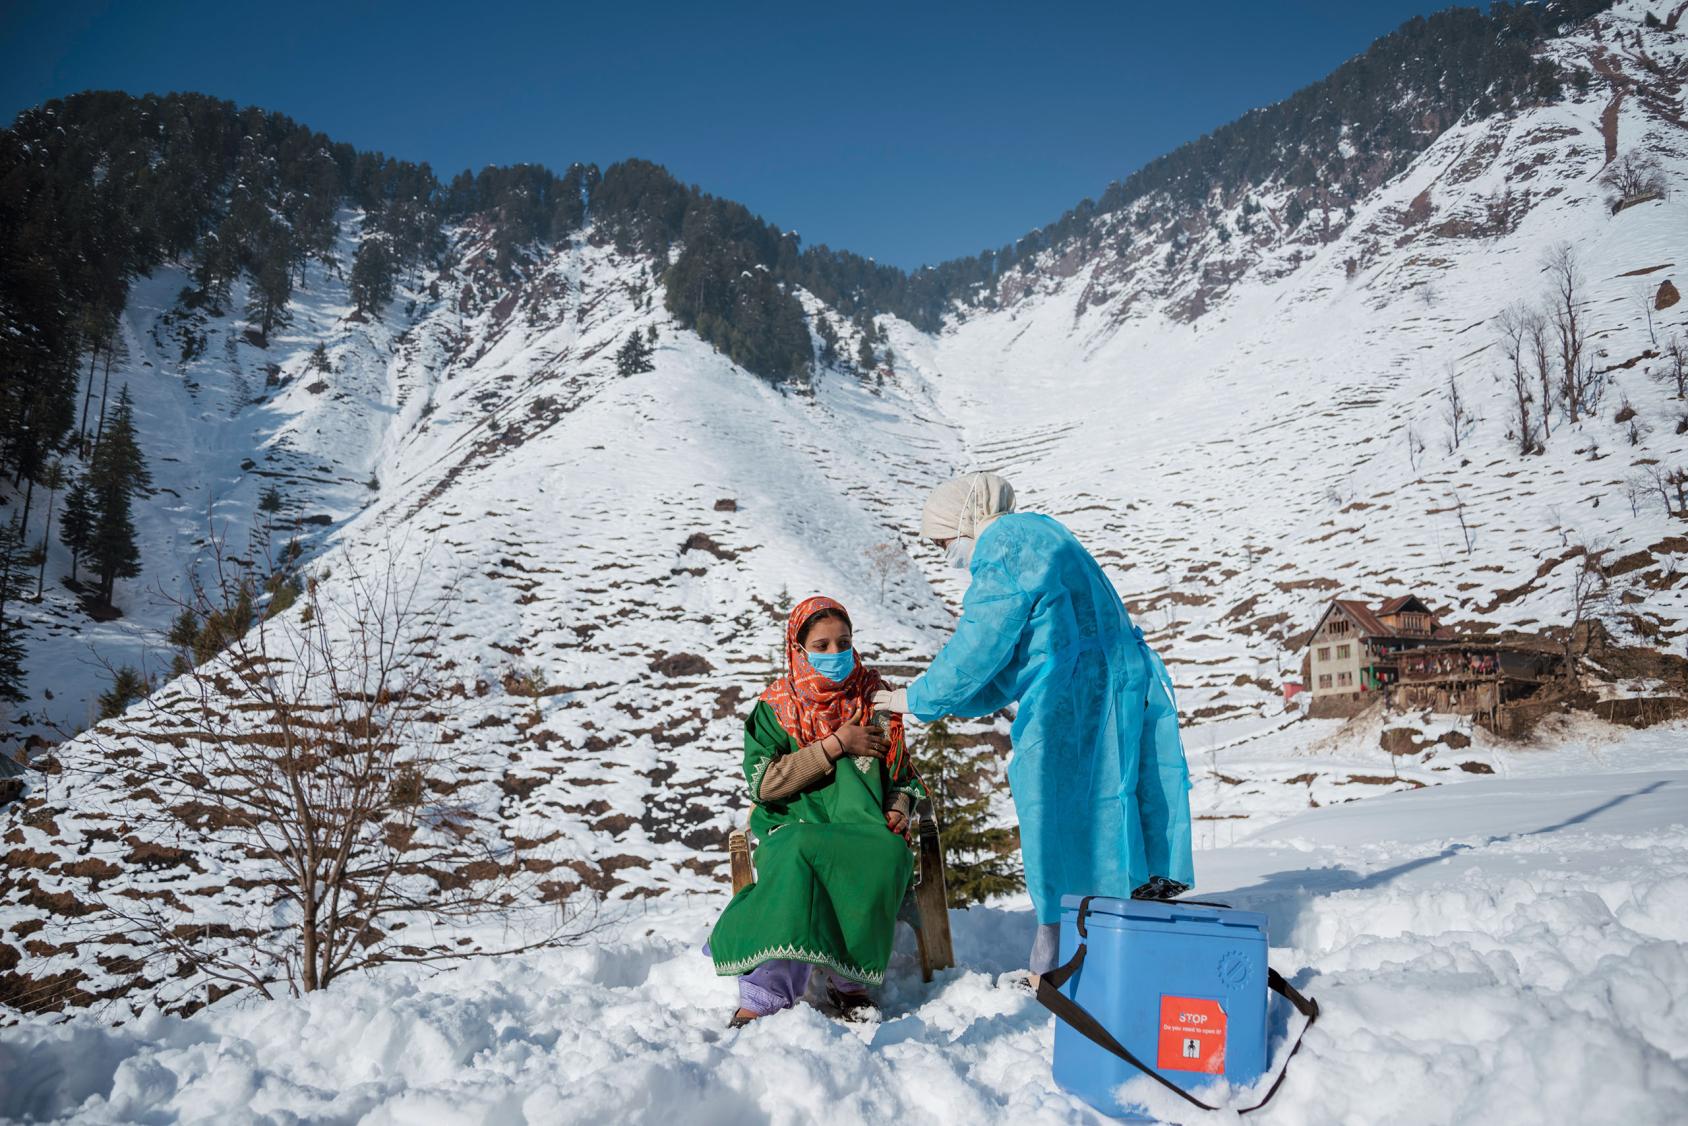 Una mujer se vacuna contra la COVID-19 en la cima de una montaña nevada.